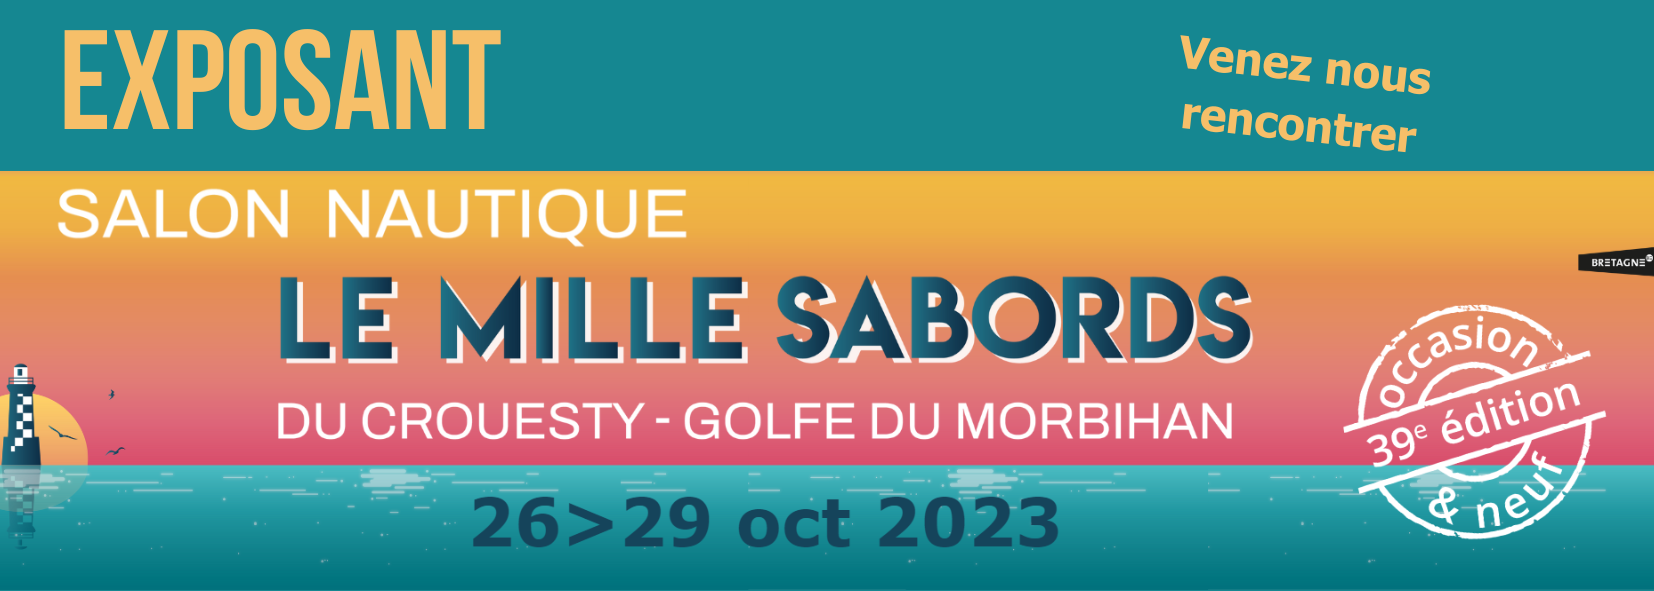 Le Mille Sabords annonce ses dates : du 26 au 29 octobre 2023